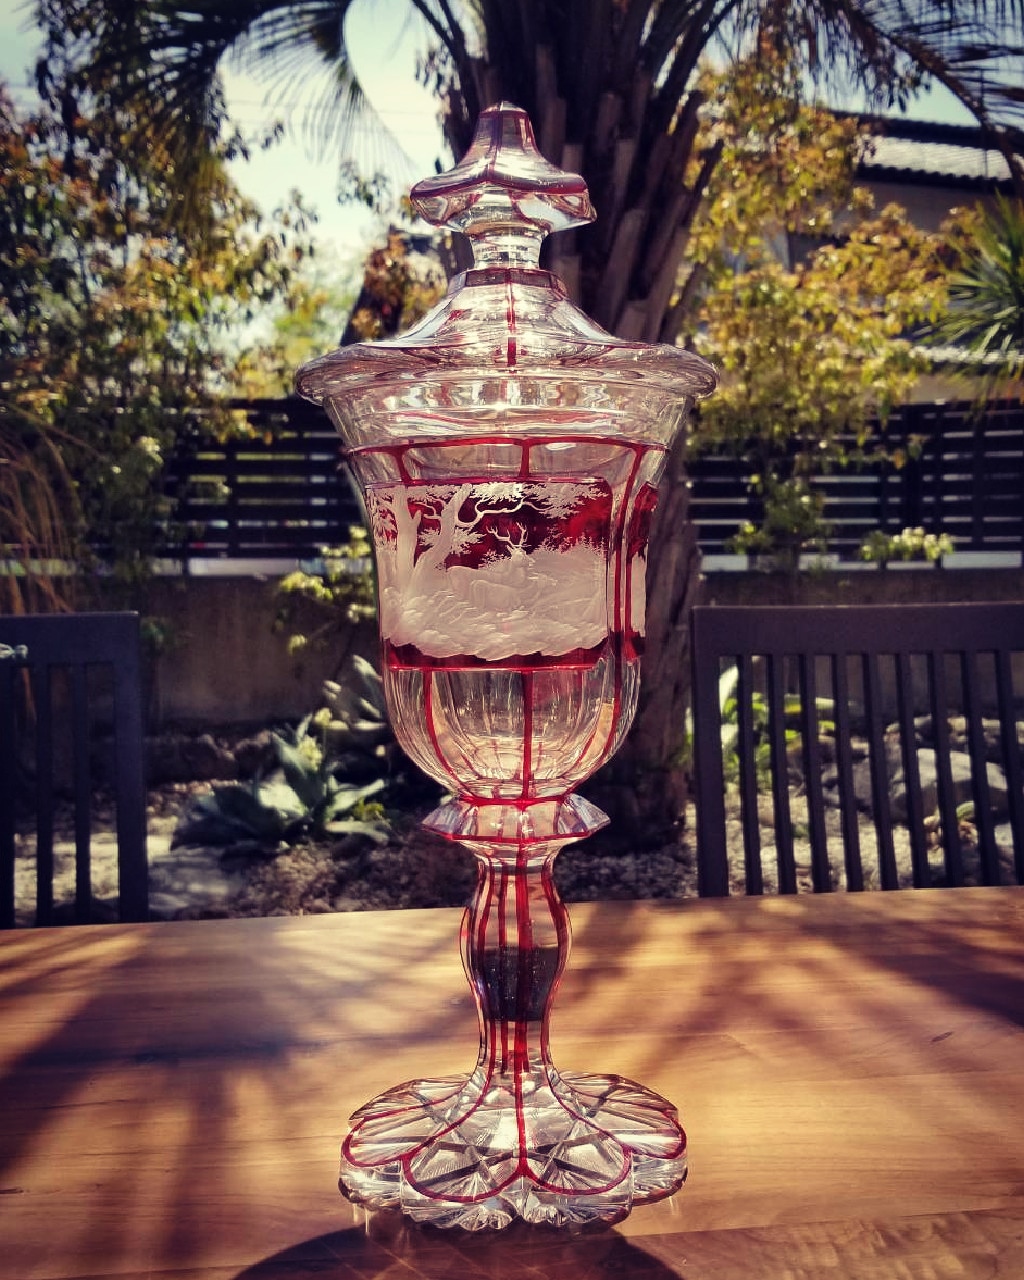 お1人様1点限り】 ボヘミアガラス花瓶 (19世紀制作アンティーク品